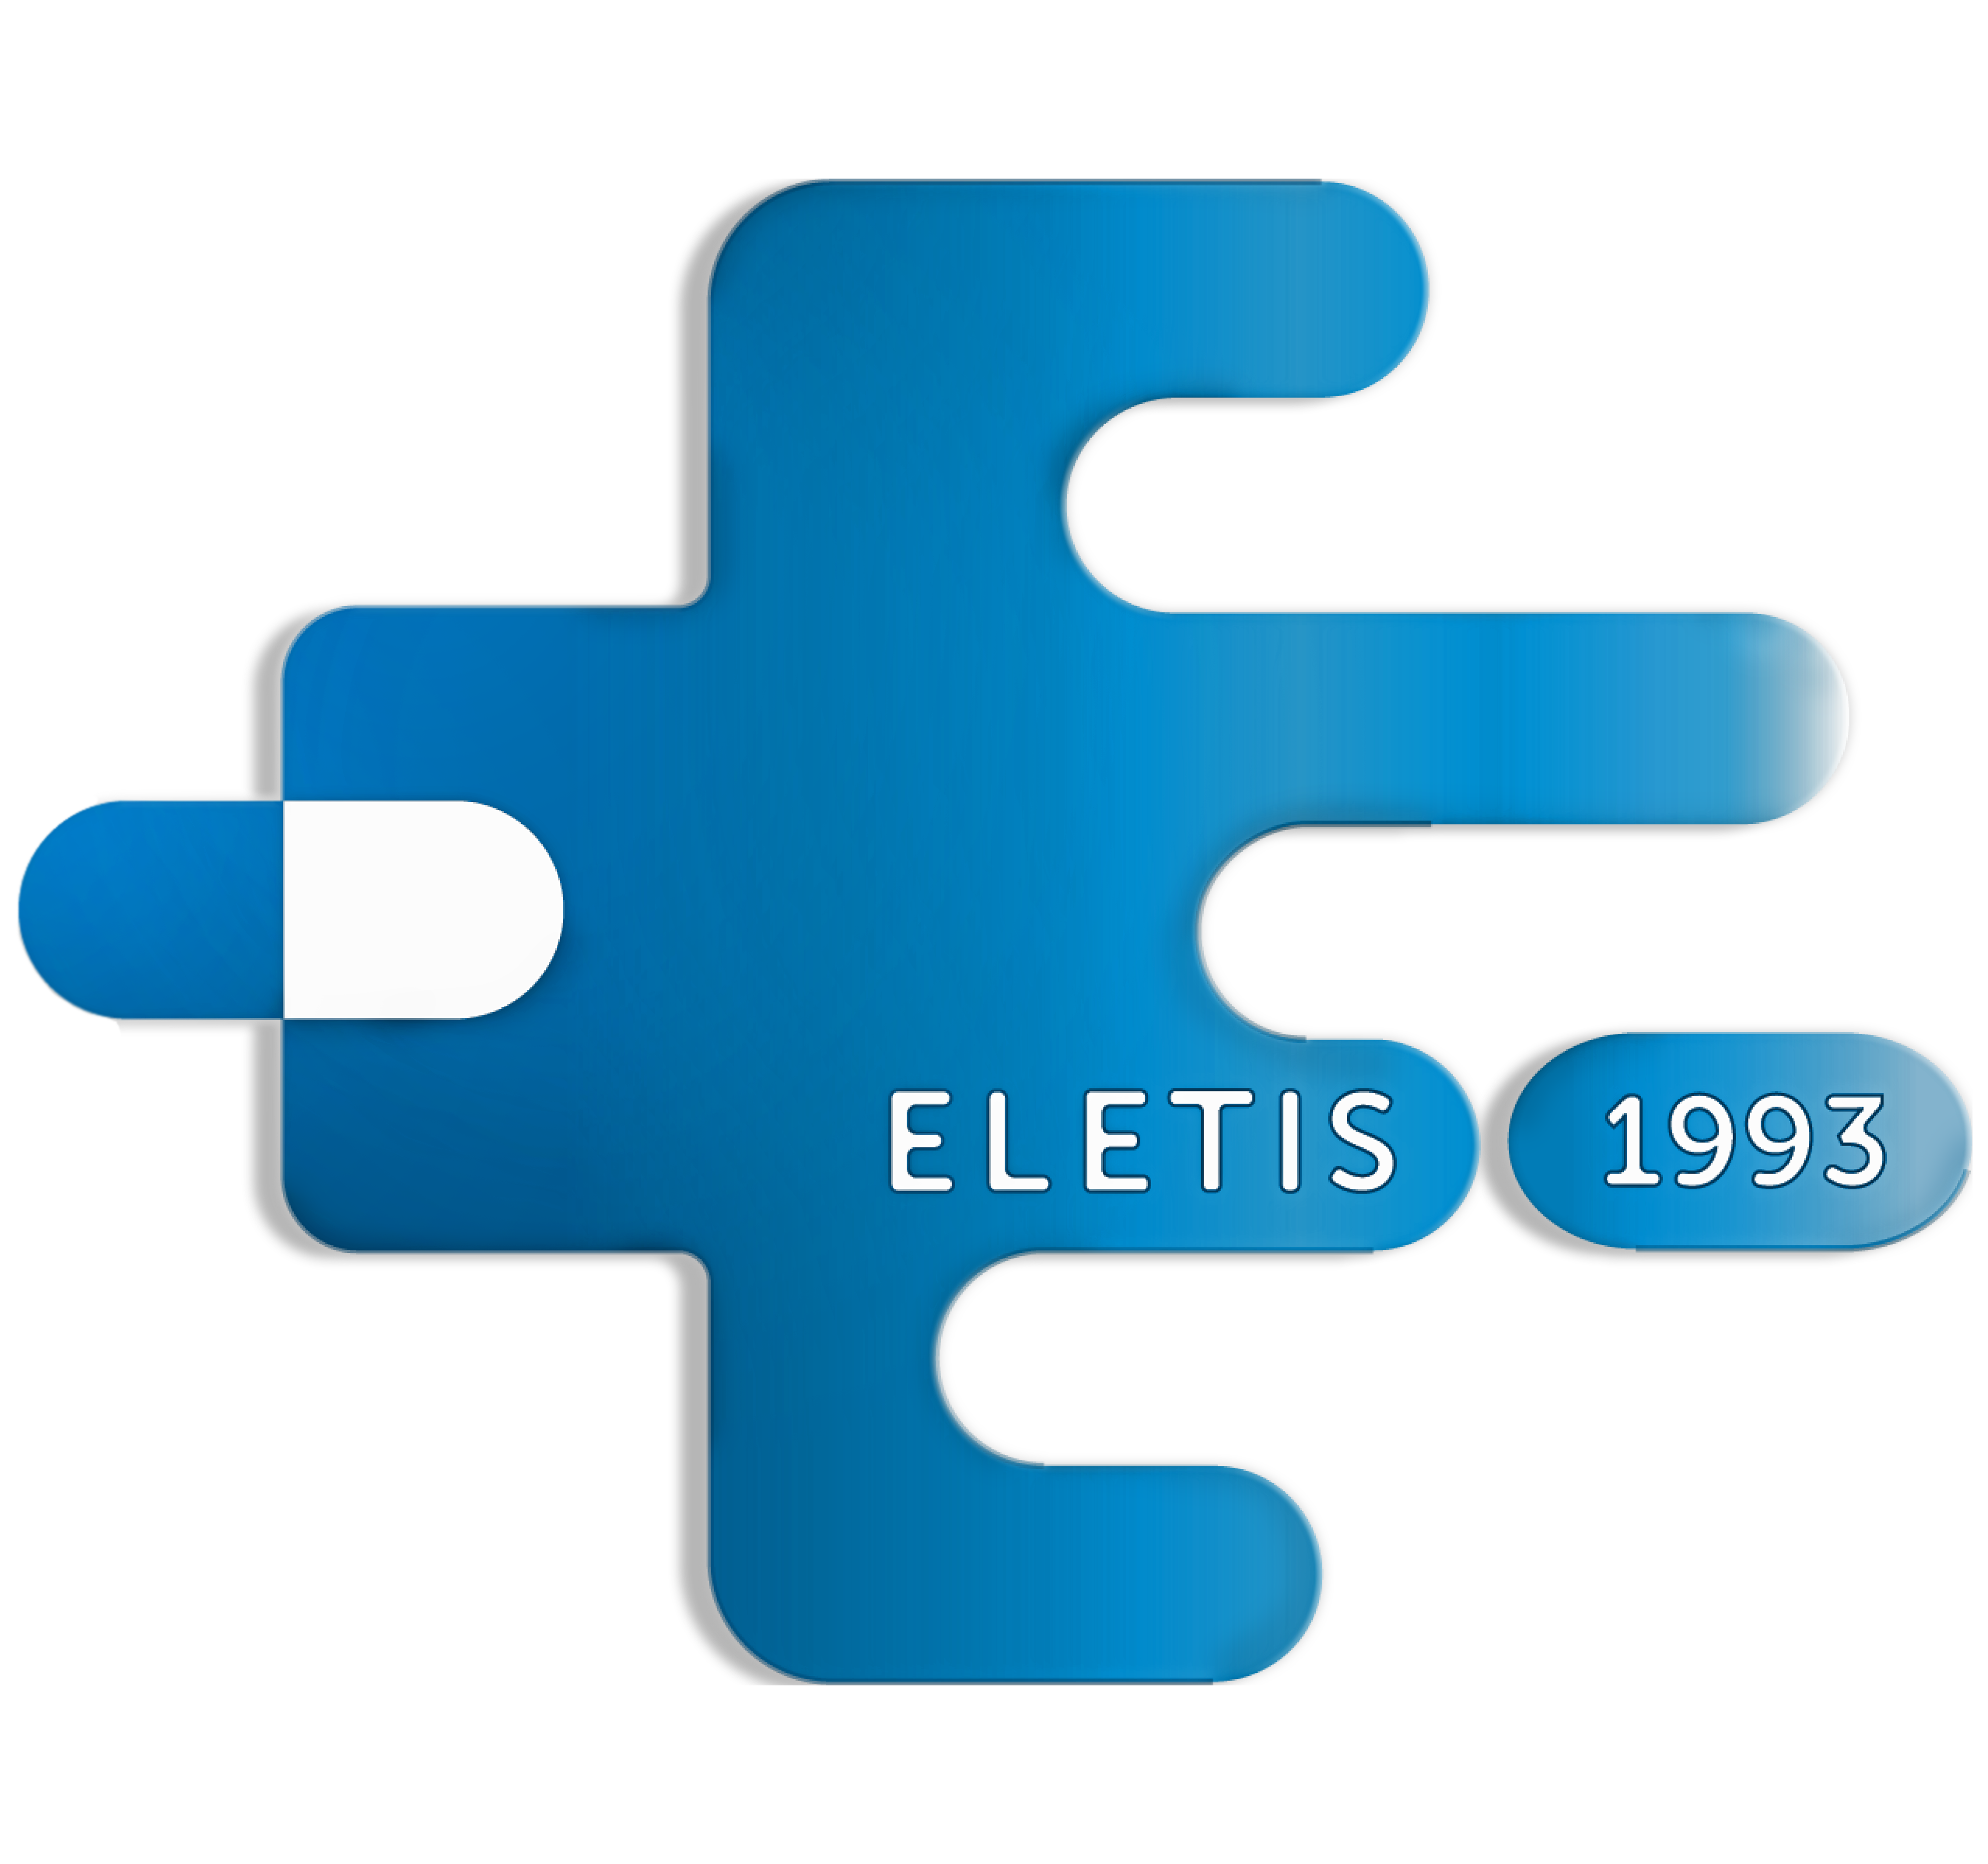 Eletis Medica UAB „Eletis Medica“ – tai veržli, ryžtinga, kompetentinga bei kūrybinga komanda, sėkmingai vykdanti veiklą farmacijos srityje nuo 1993 metų. Įmonė yra subūrusi aukštos kvalifikacijos specialistų komandą užtikrinančią farmacinės paslaugos kokybę Lietuvoje bei kitose Baltijos šalyse.